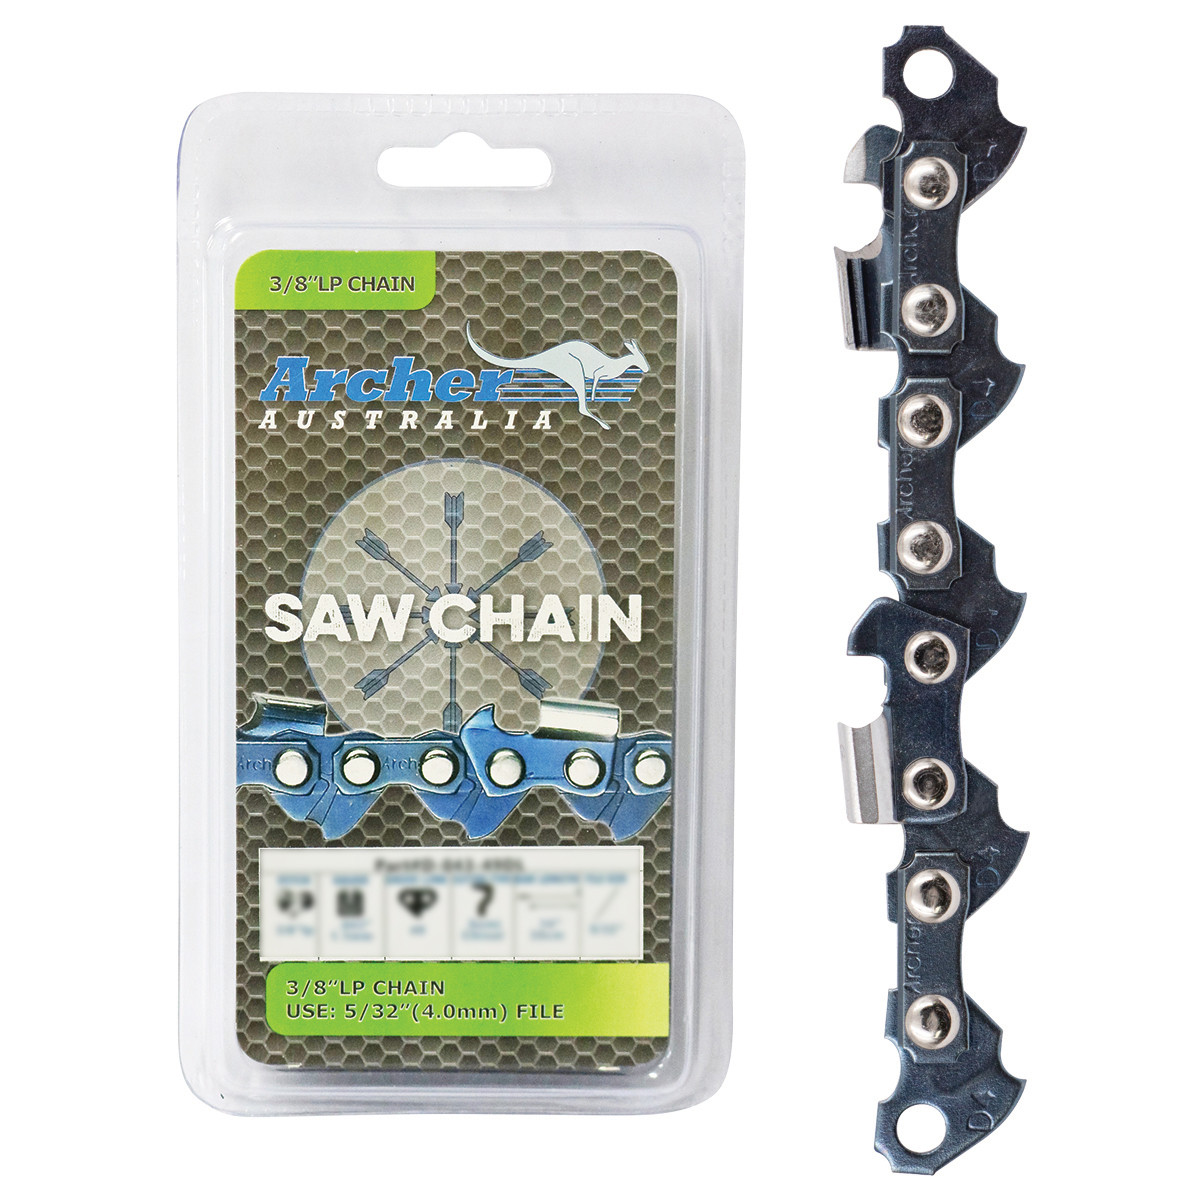 16" Chain Saw Chain Suits Toro